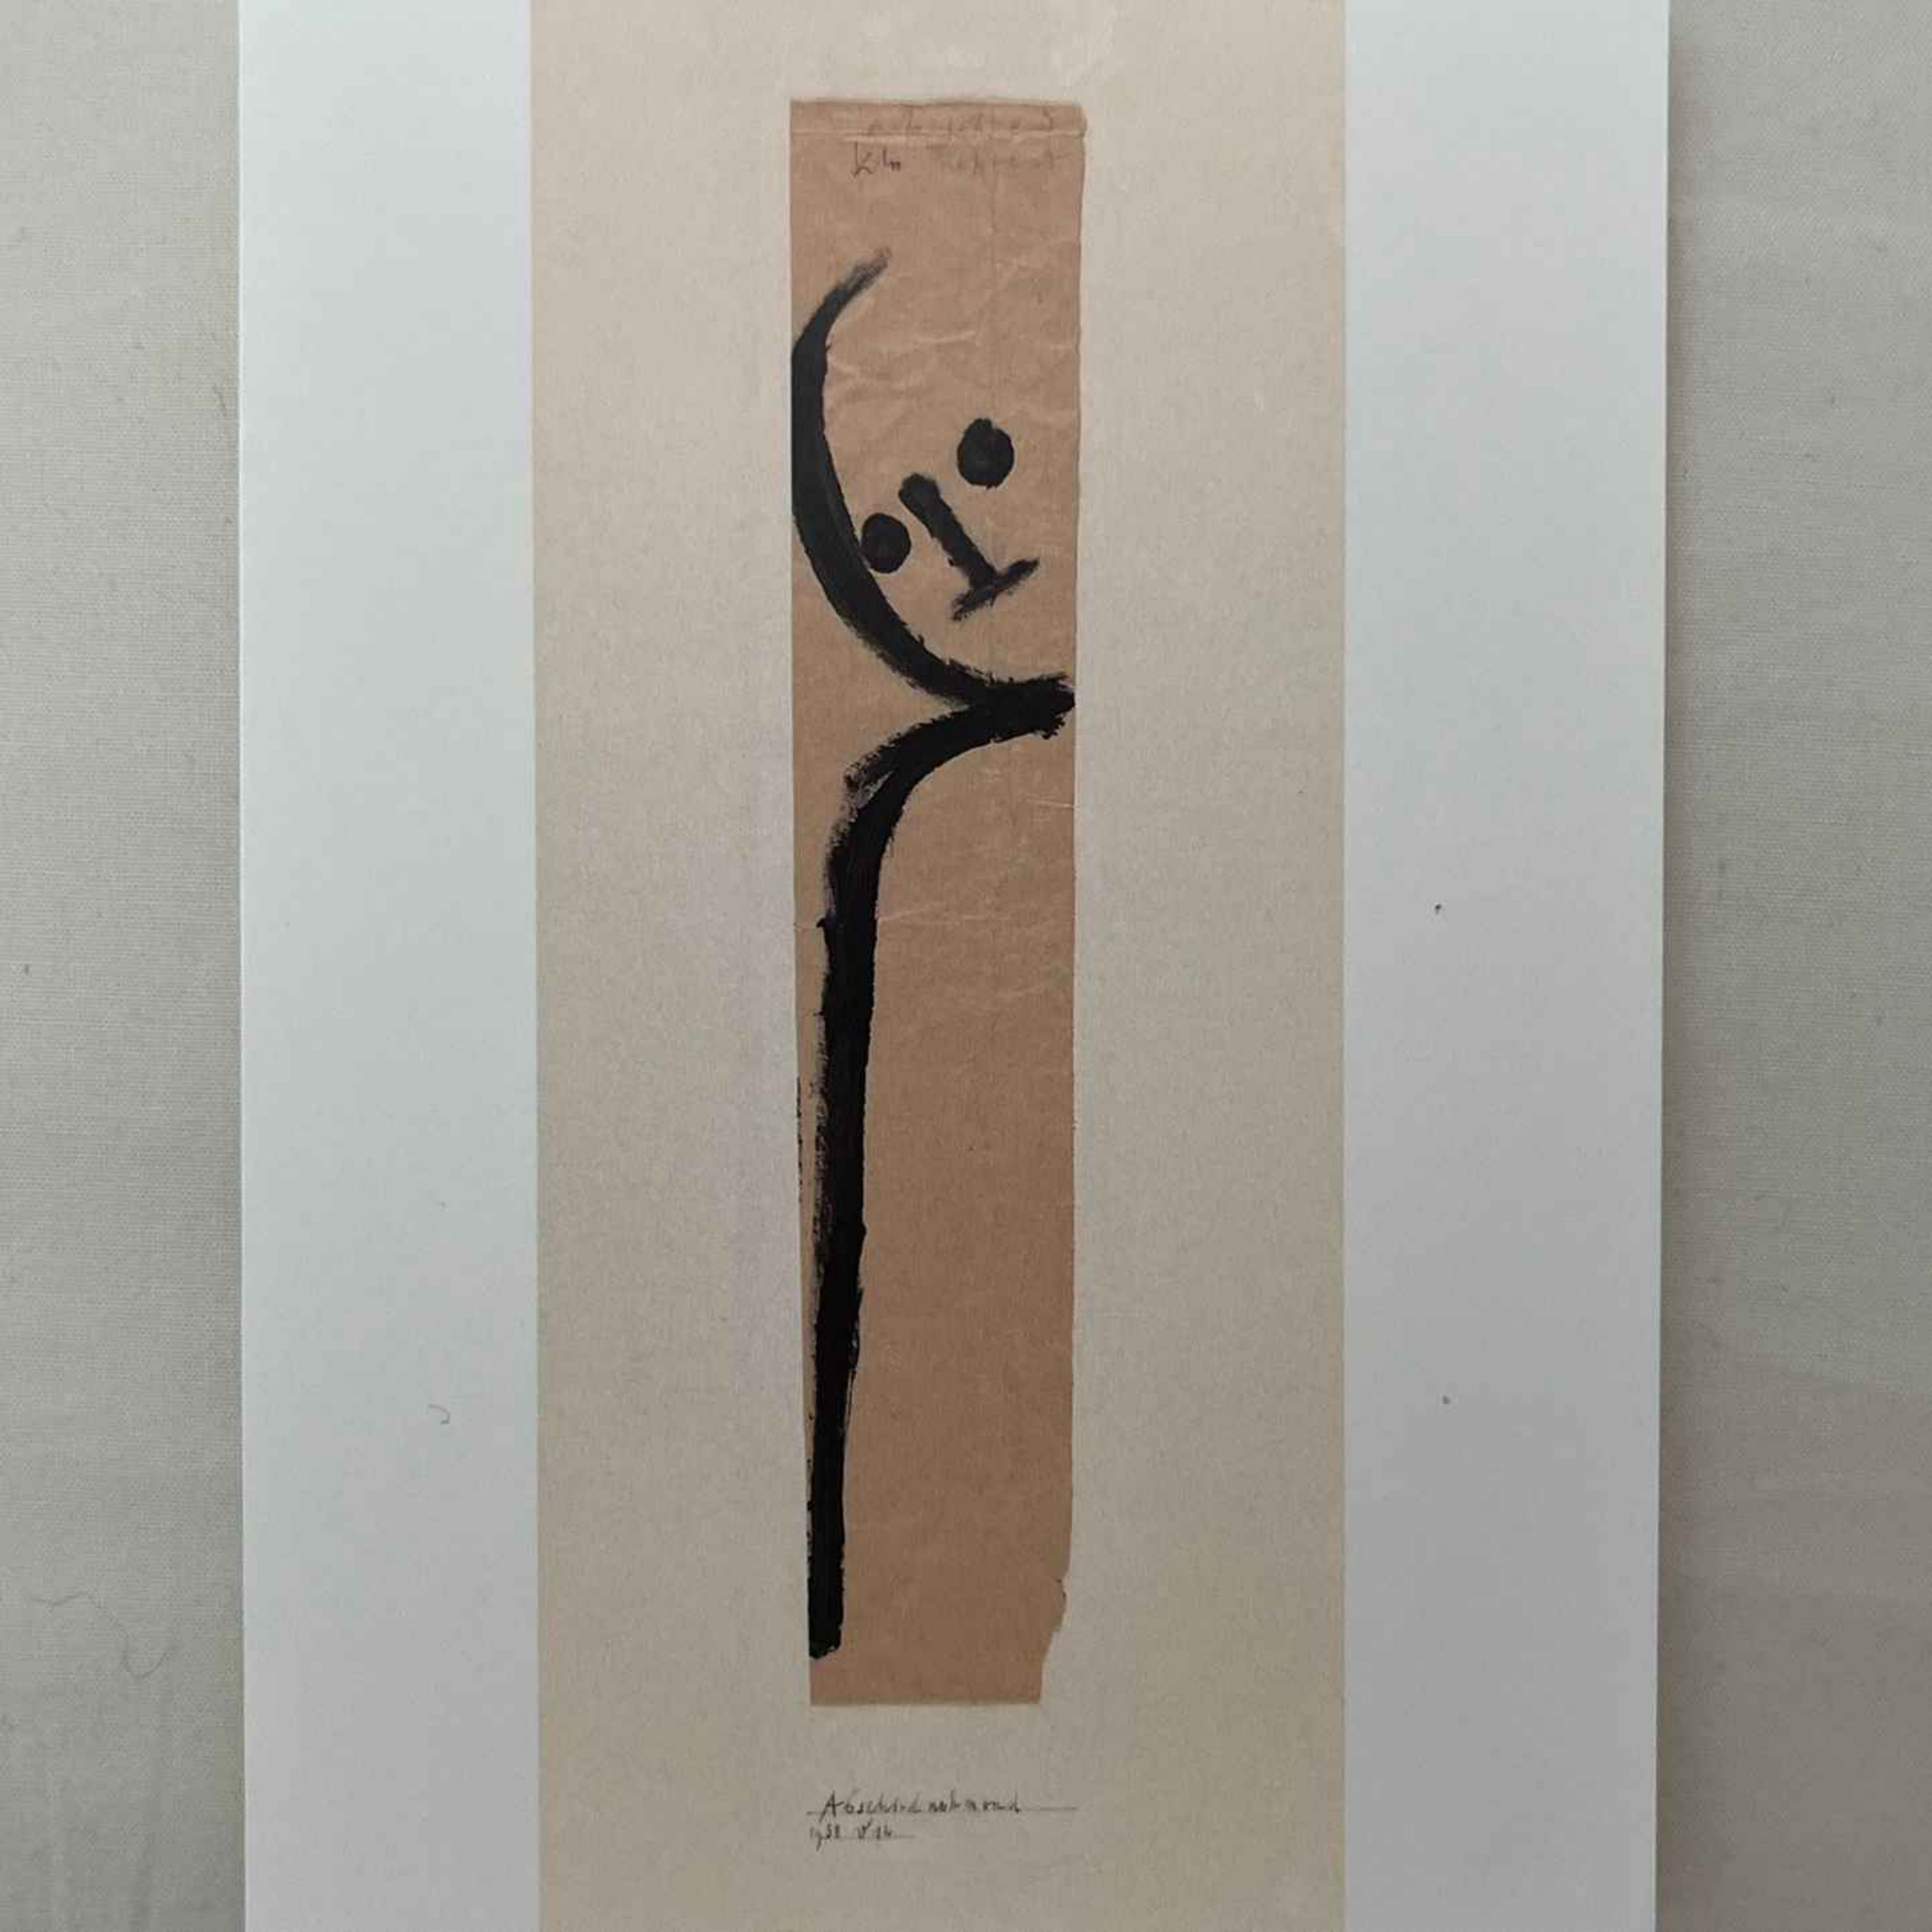 cover art for #90 Paul Klee 